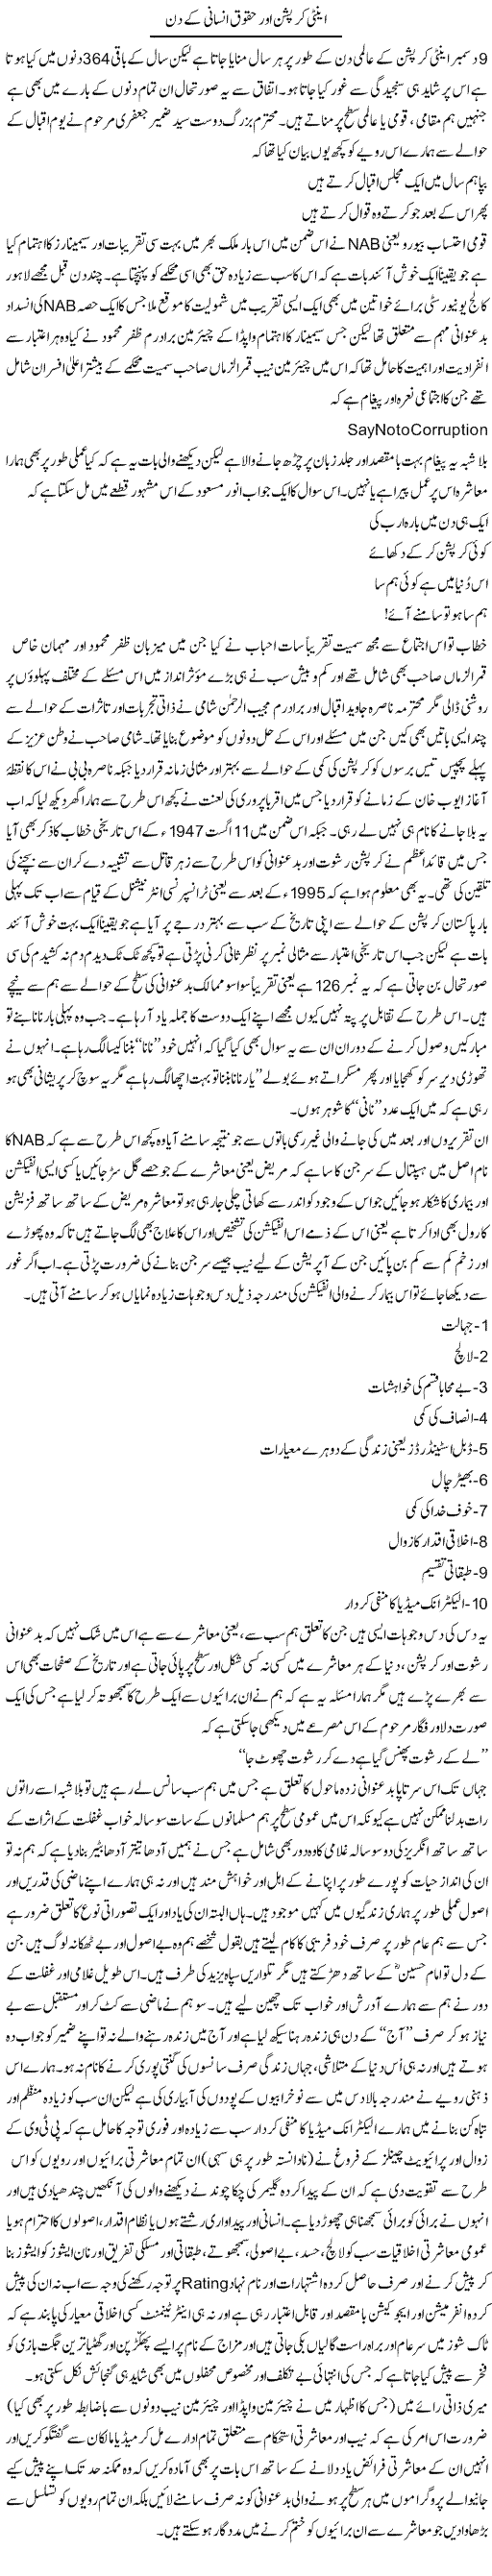 Anti Corruption Aur Haqooq Insani Ke Din | Amjad Islam Amjad | Daily Urdu Columns